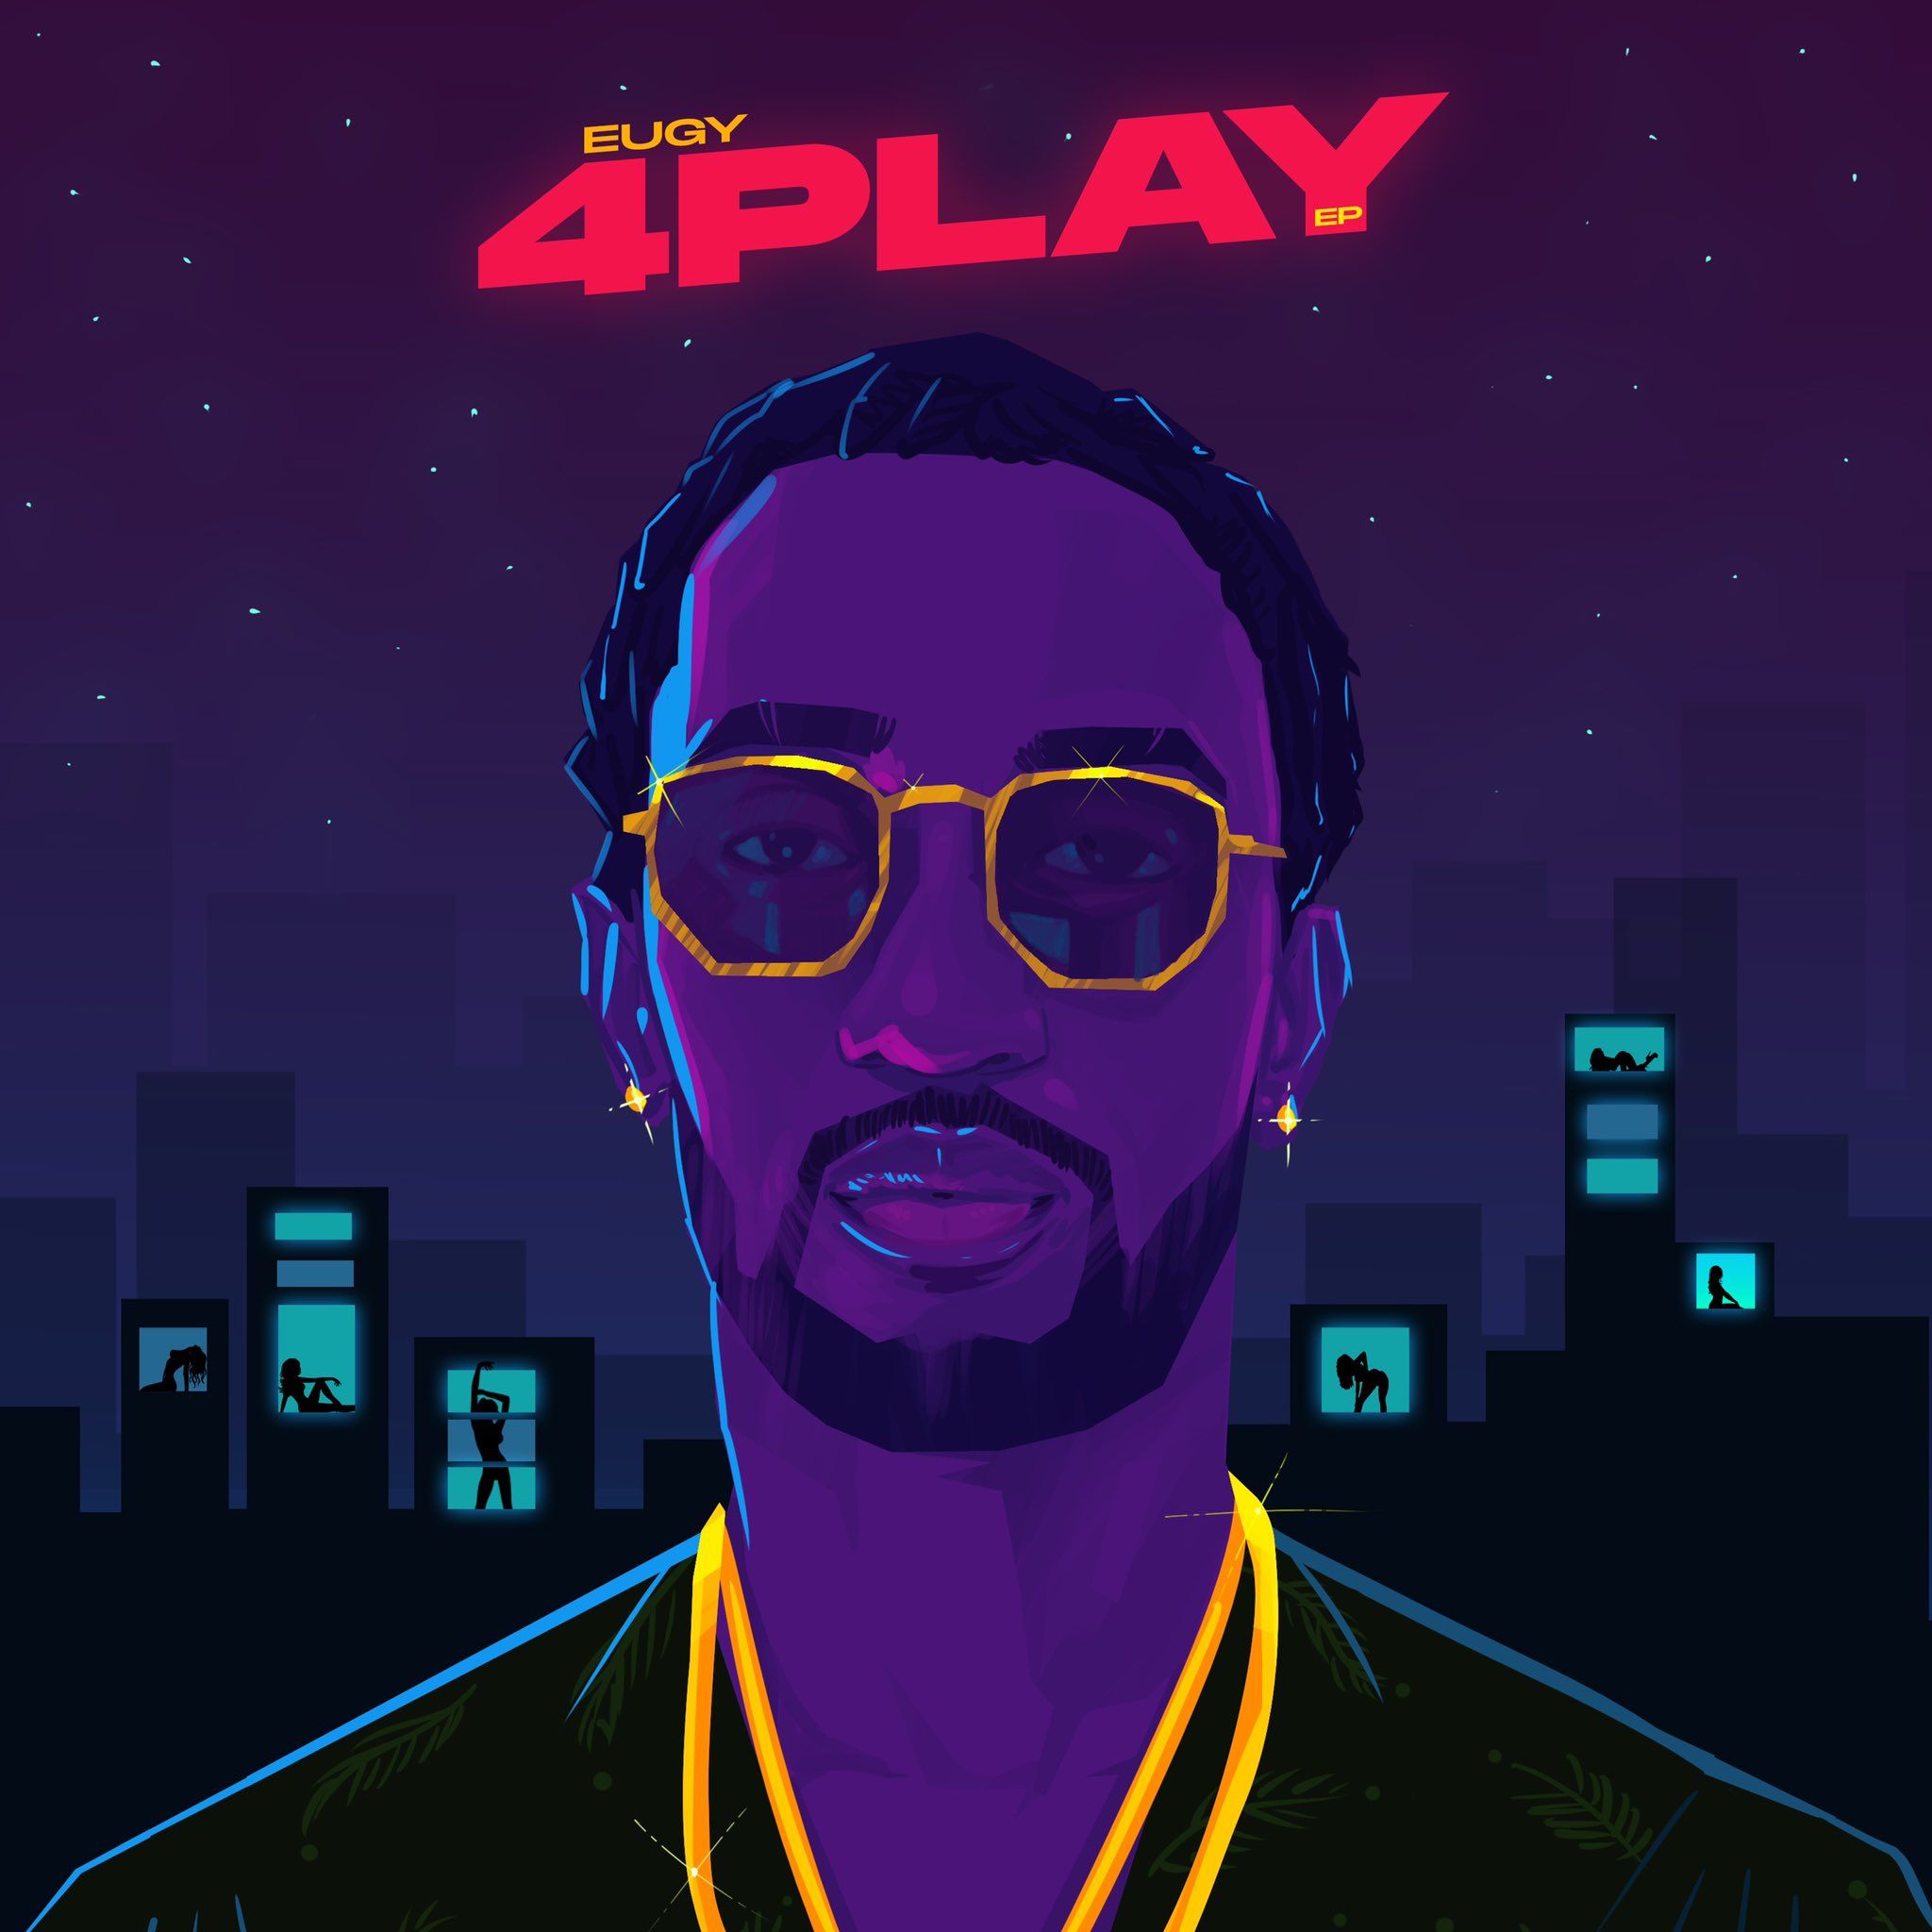 EUGY 4 Play (EP) Album Cover